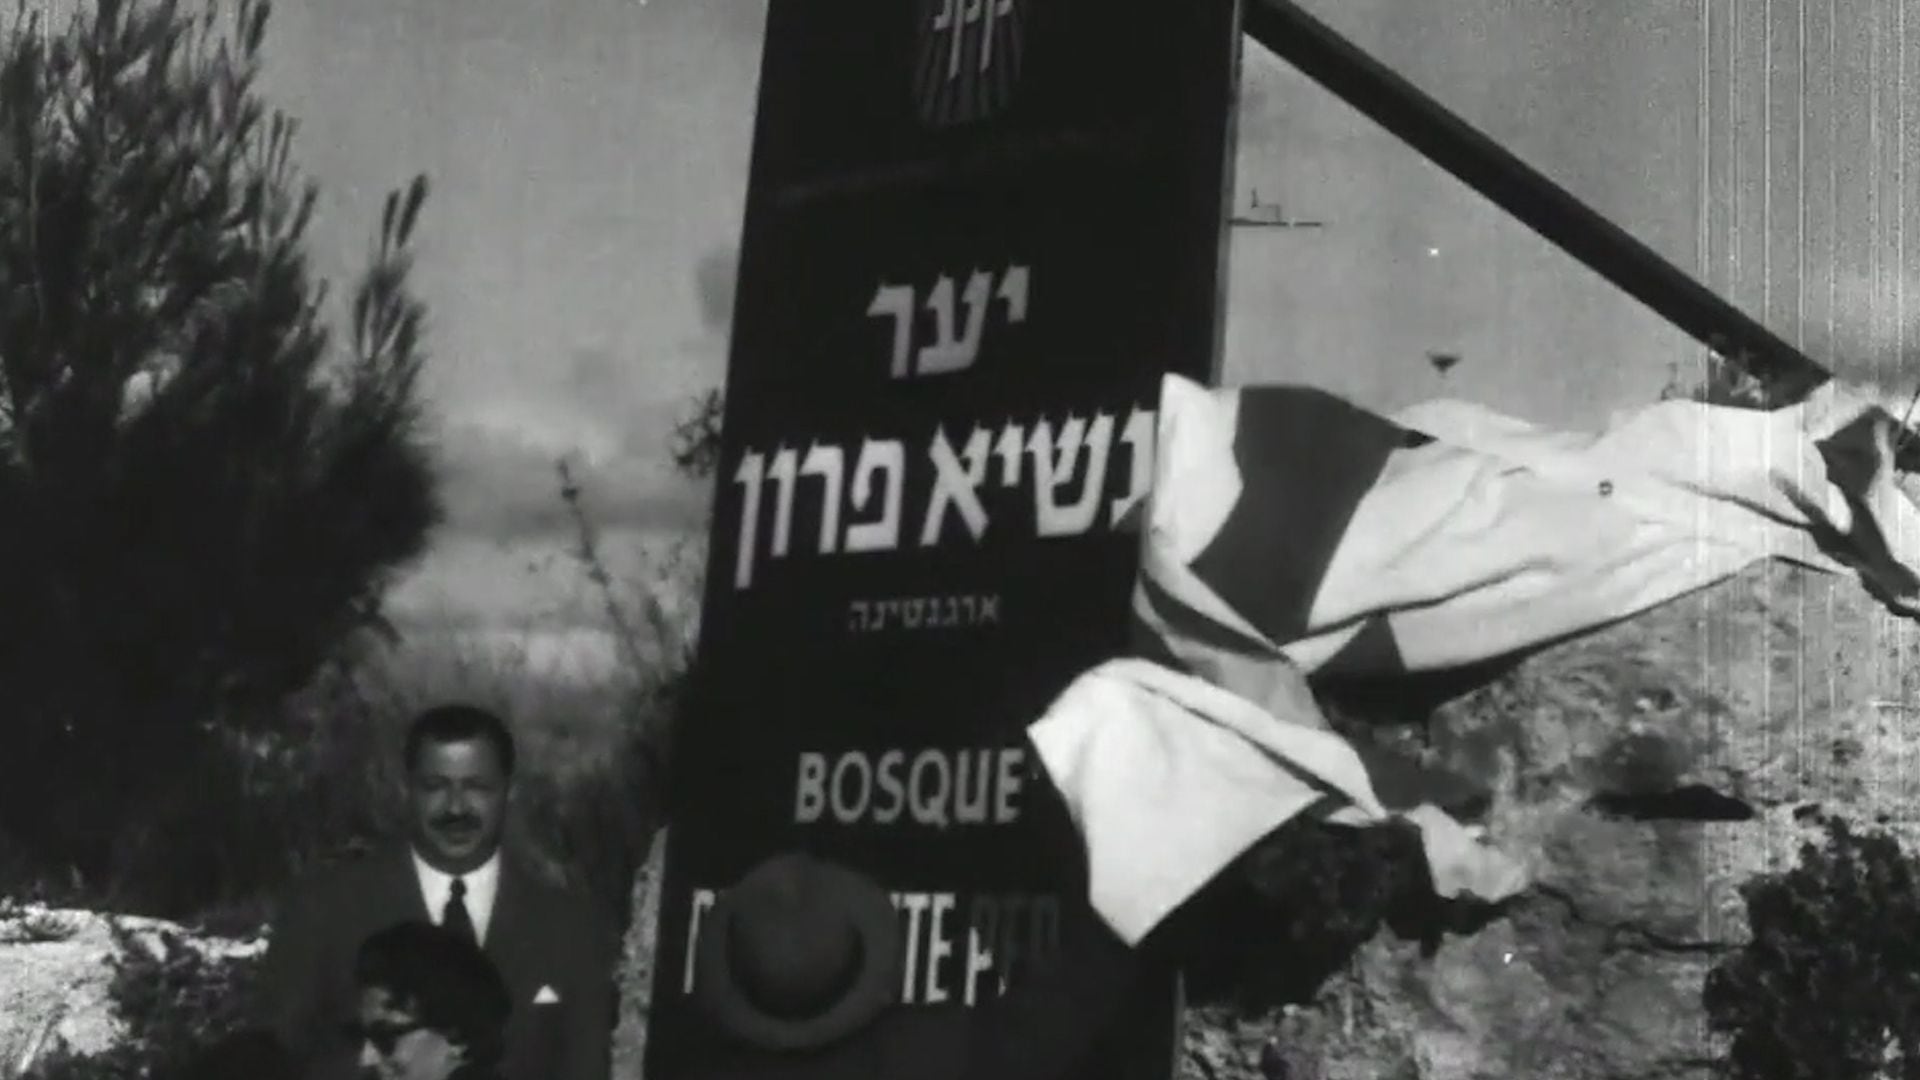 El cartel con el nombre del bosque Presidente Perón en hebreo y en castellano